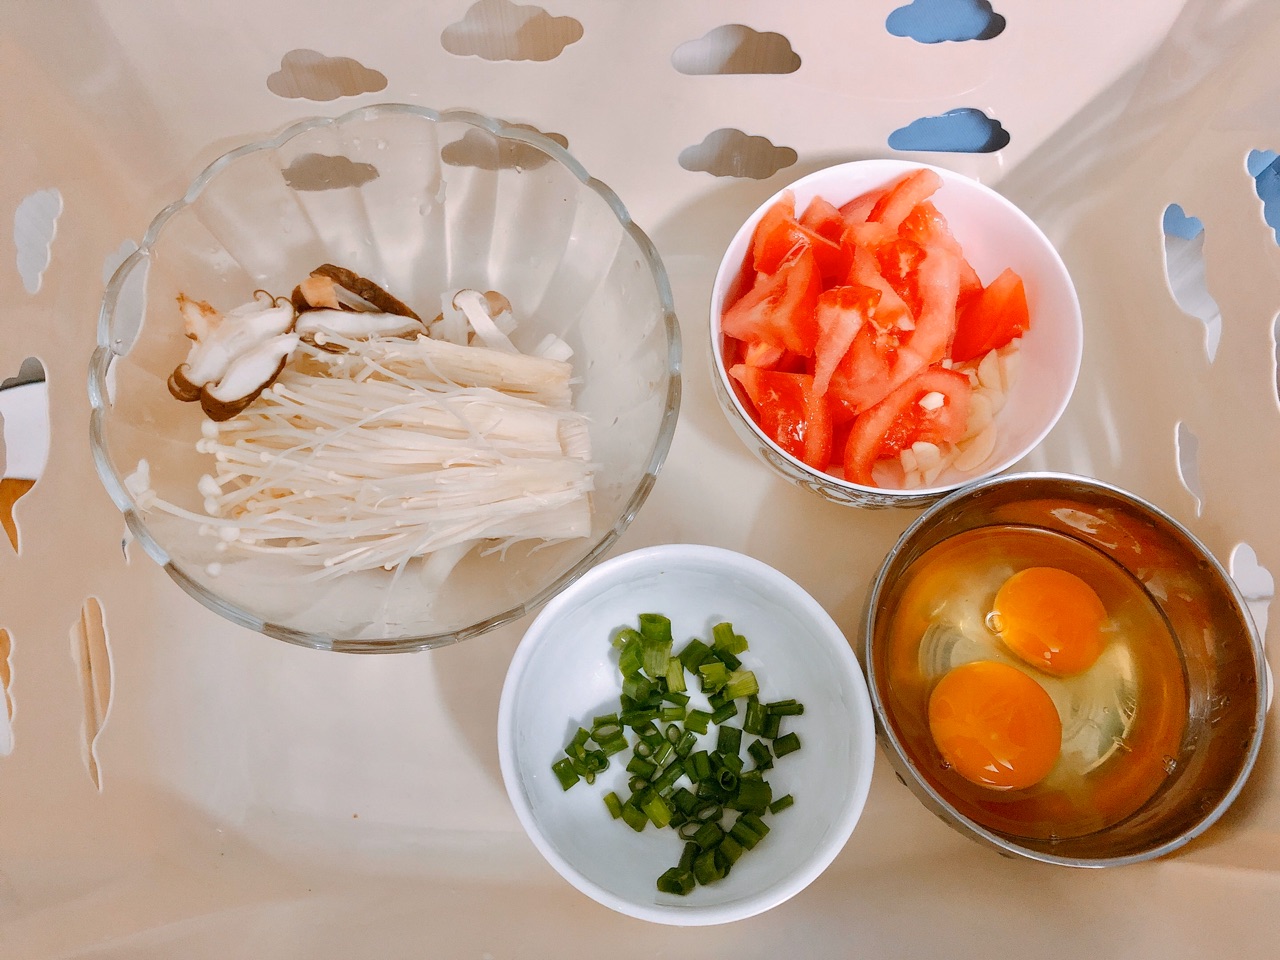 西红柿蘑菇豆腐汤,西红柿蘑菇豆腐汤的家常做法 - 美食杰西红柿蘑菇豆腐汤做法大全